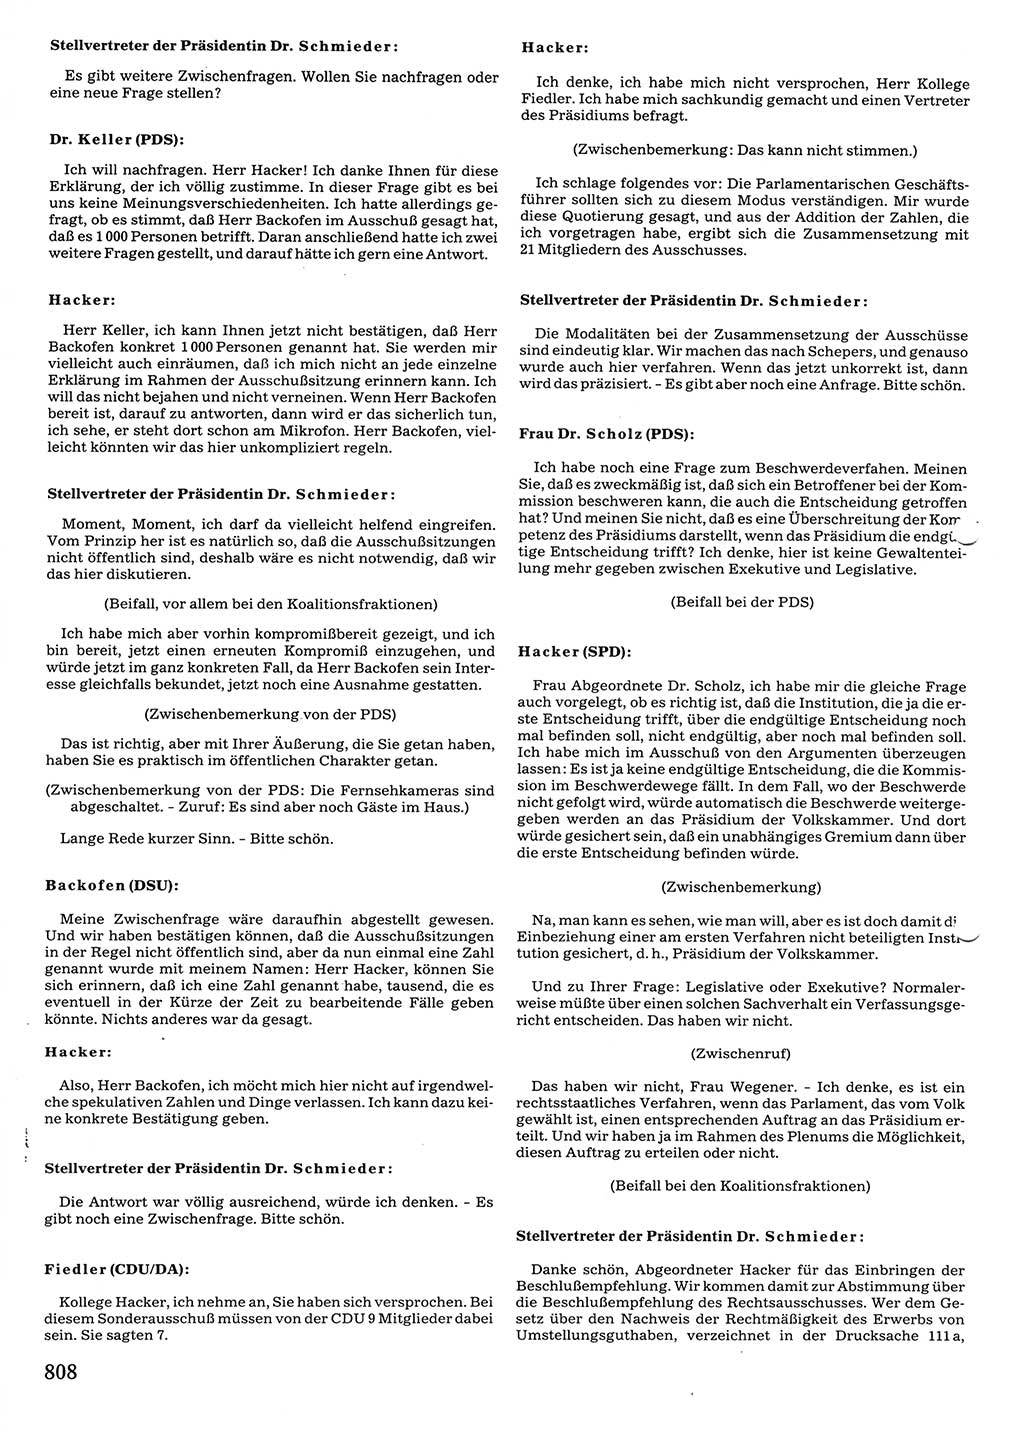 Tagungen der Volkskammer (VK) der Deutschen Demokratischen Republik (DDR), 10. Wahlperiode 1990, Seite 808 (VK. DDR 10. WP. 1990, Prot. Tg. 1-38, 5.4.-2.10.1990, S. 808)